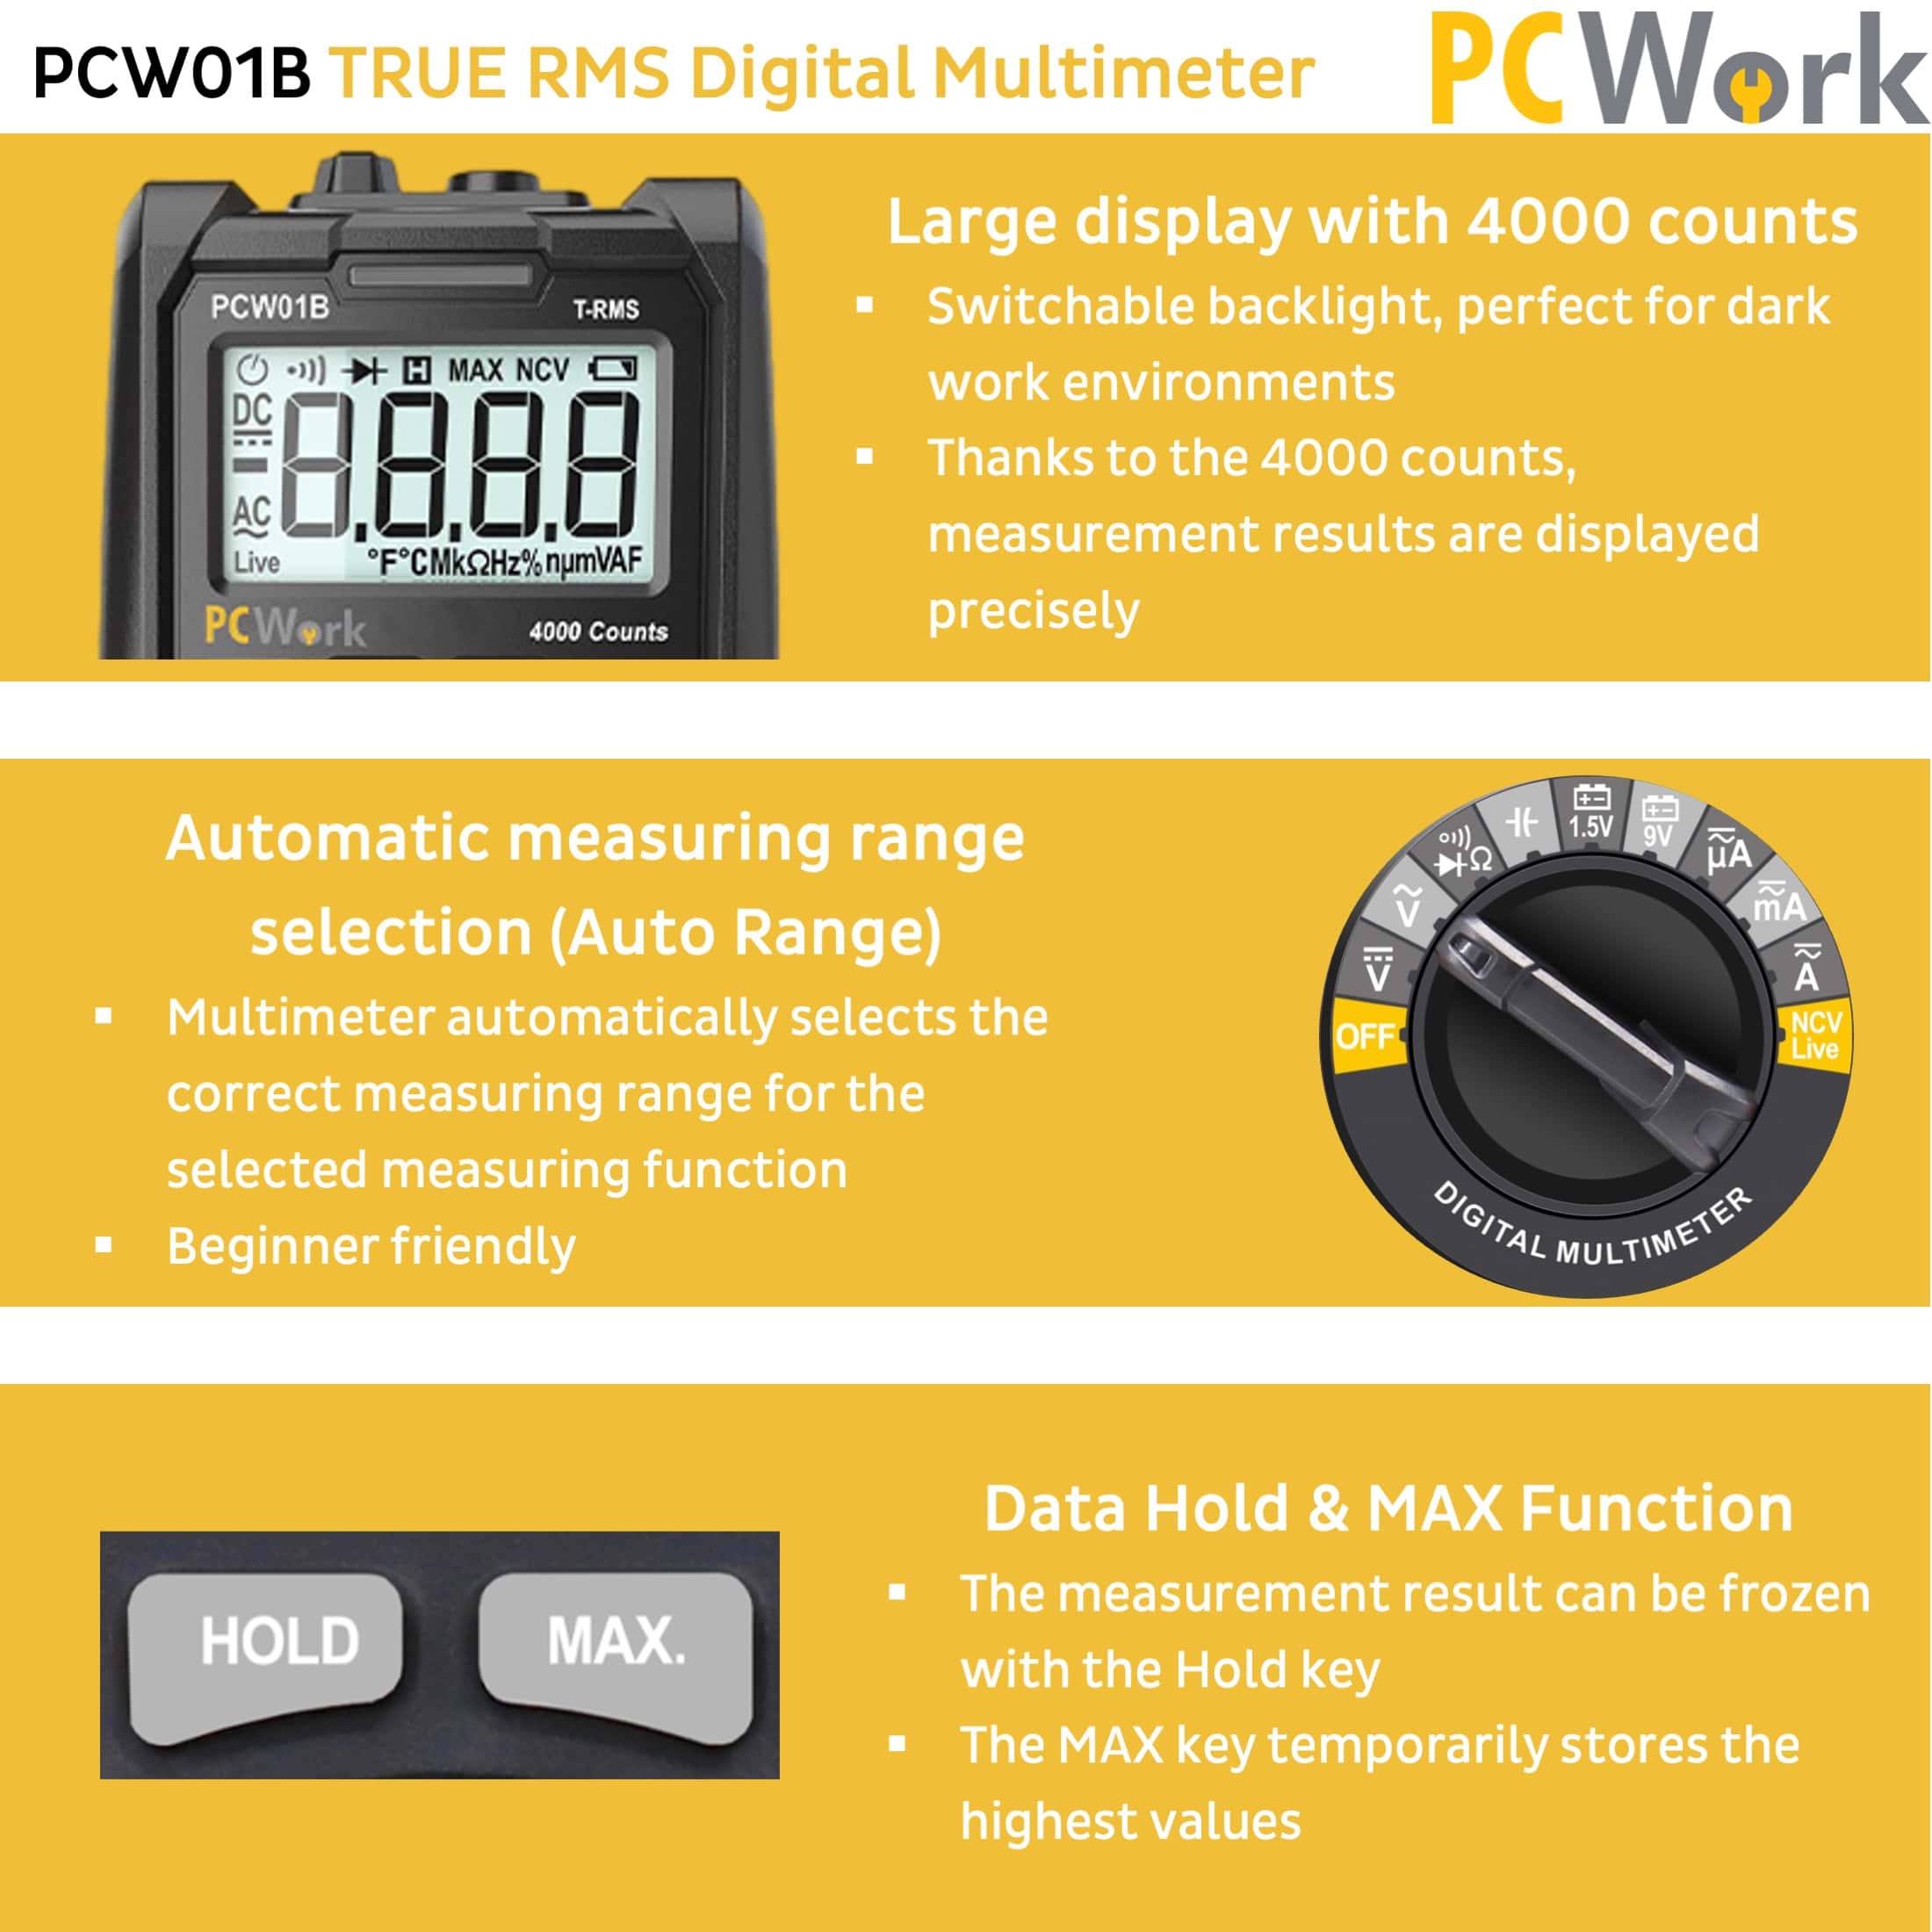 PCW01B Digitalmultimeter, True RMS, Auto Range